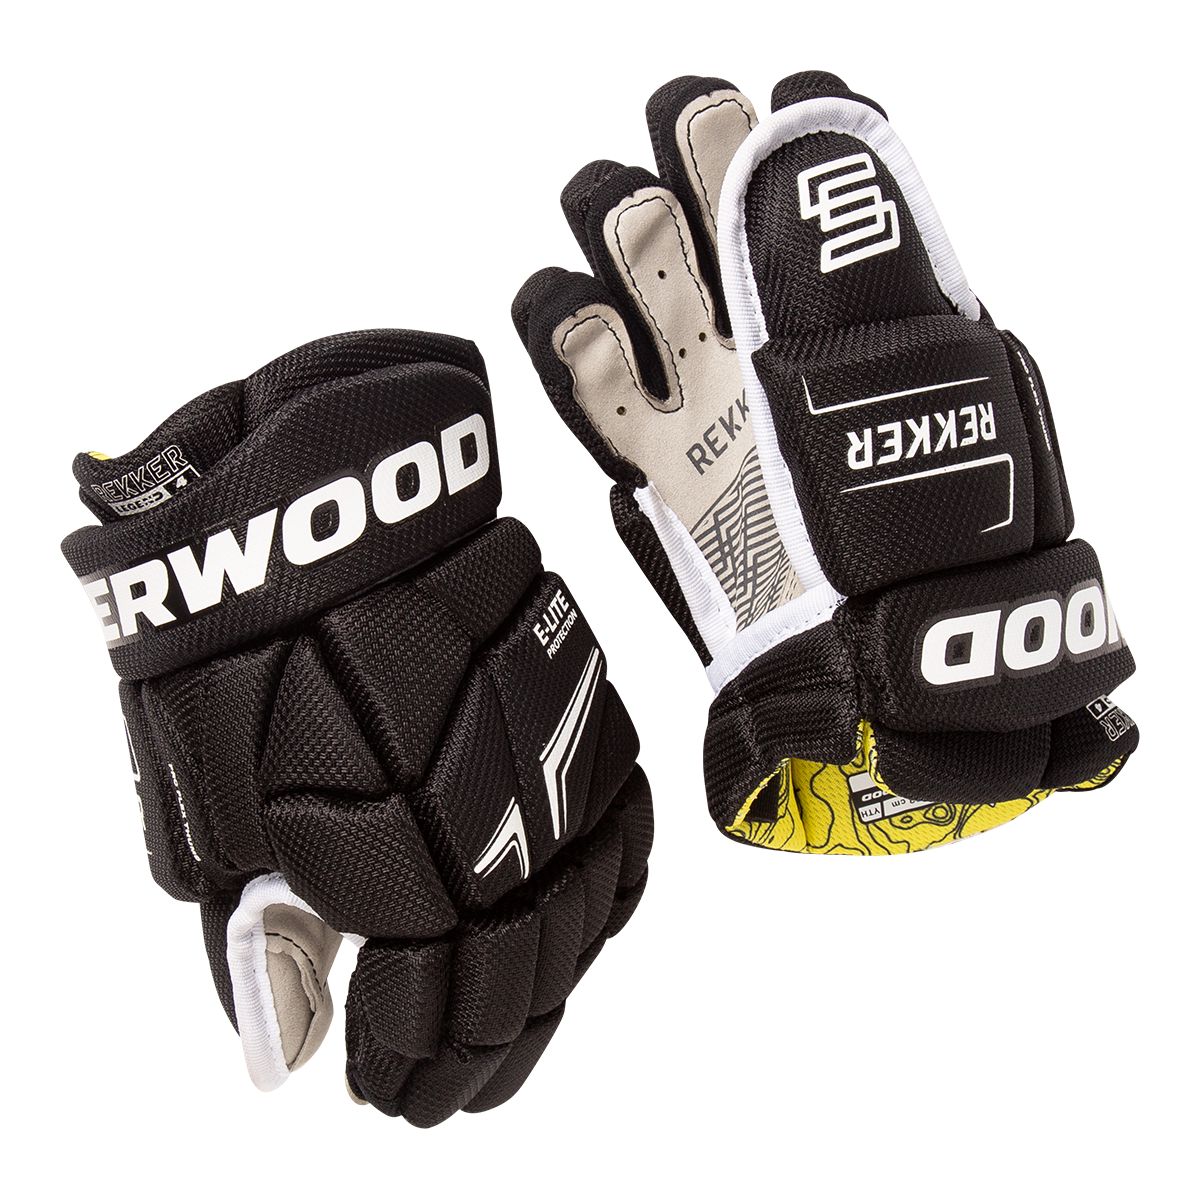 Image of Sherwood Legend Youth Hockey Gloves